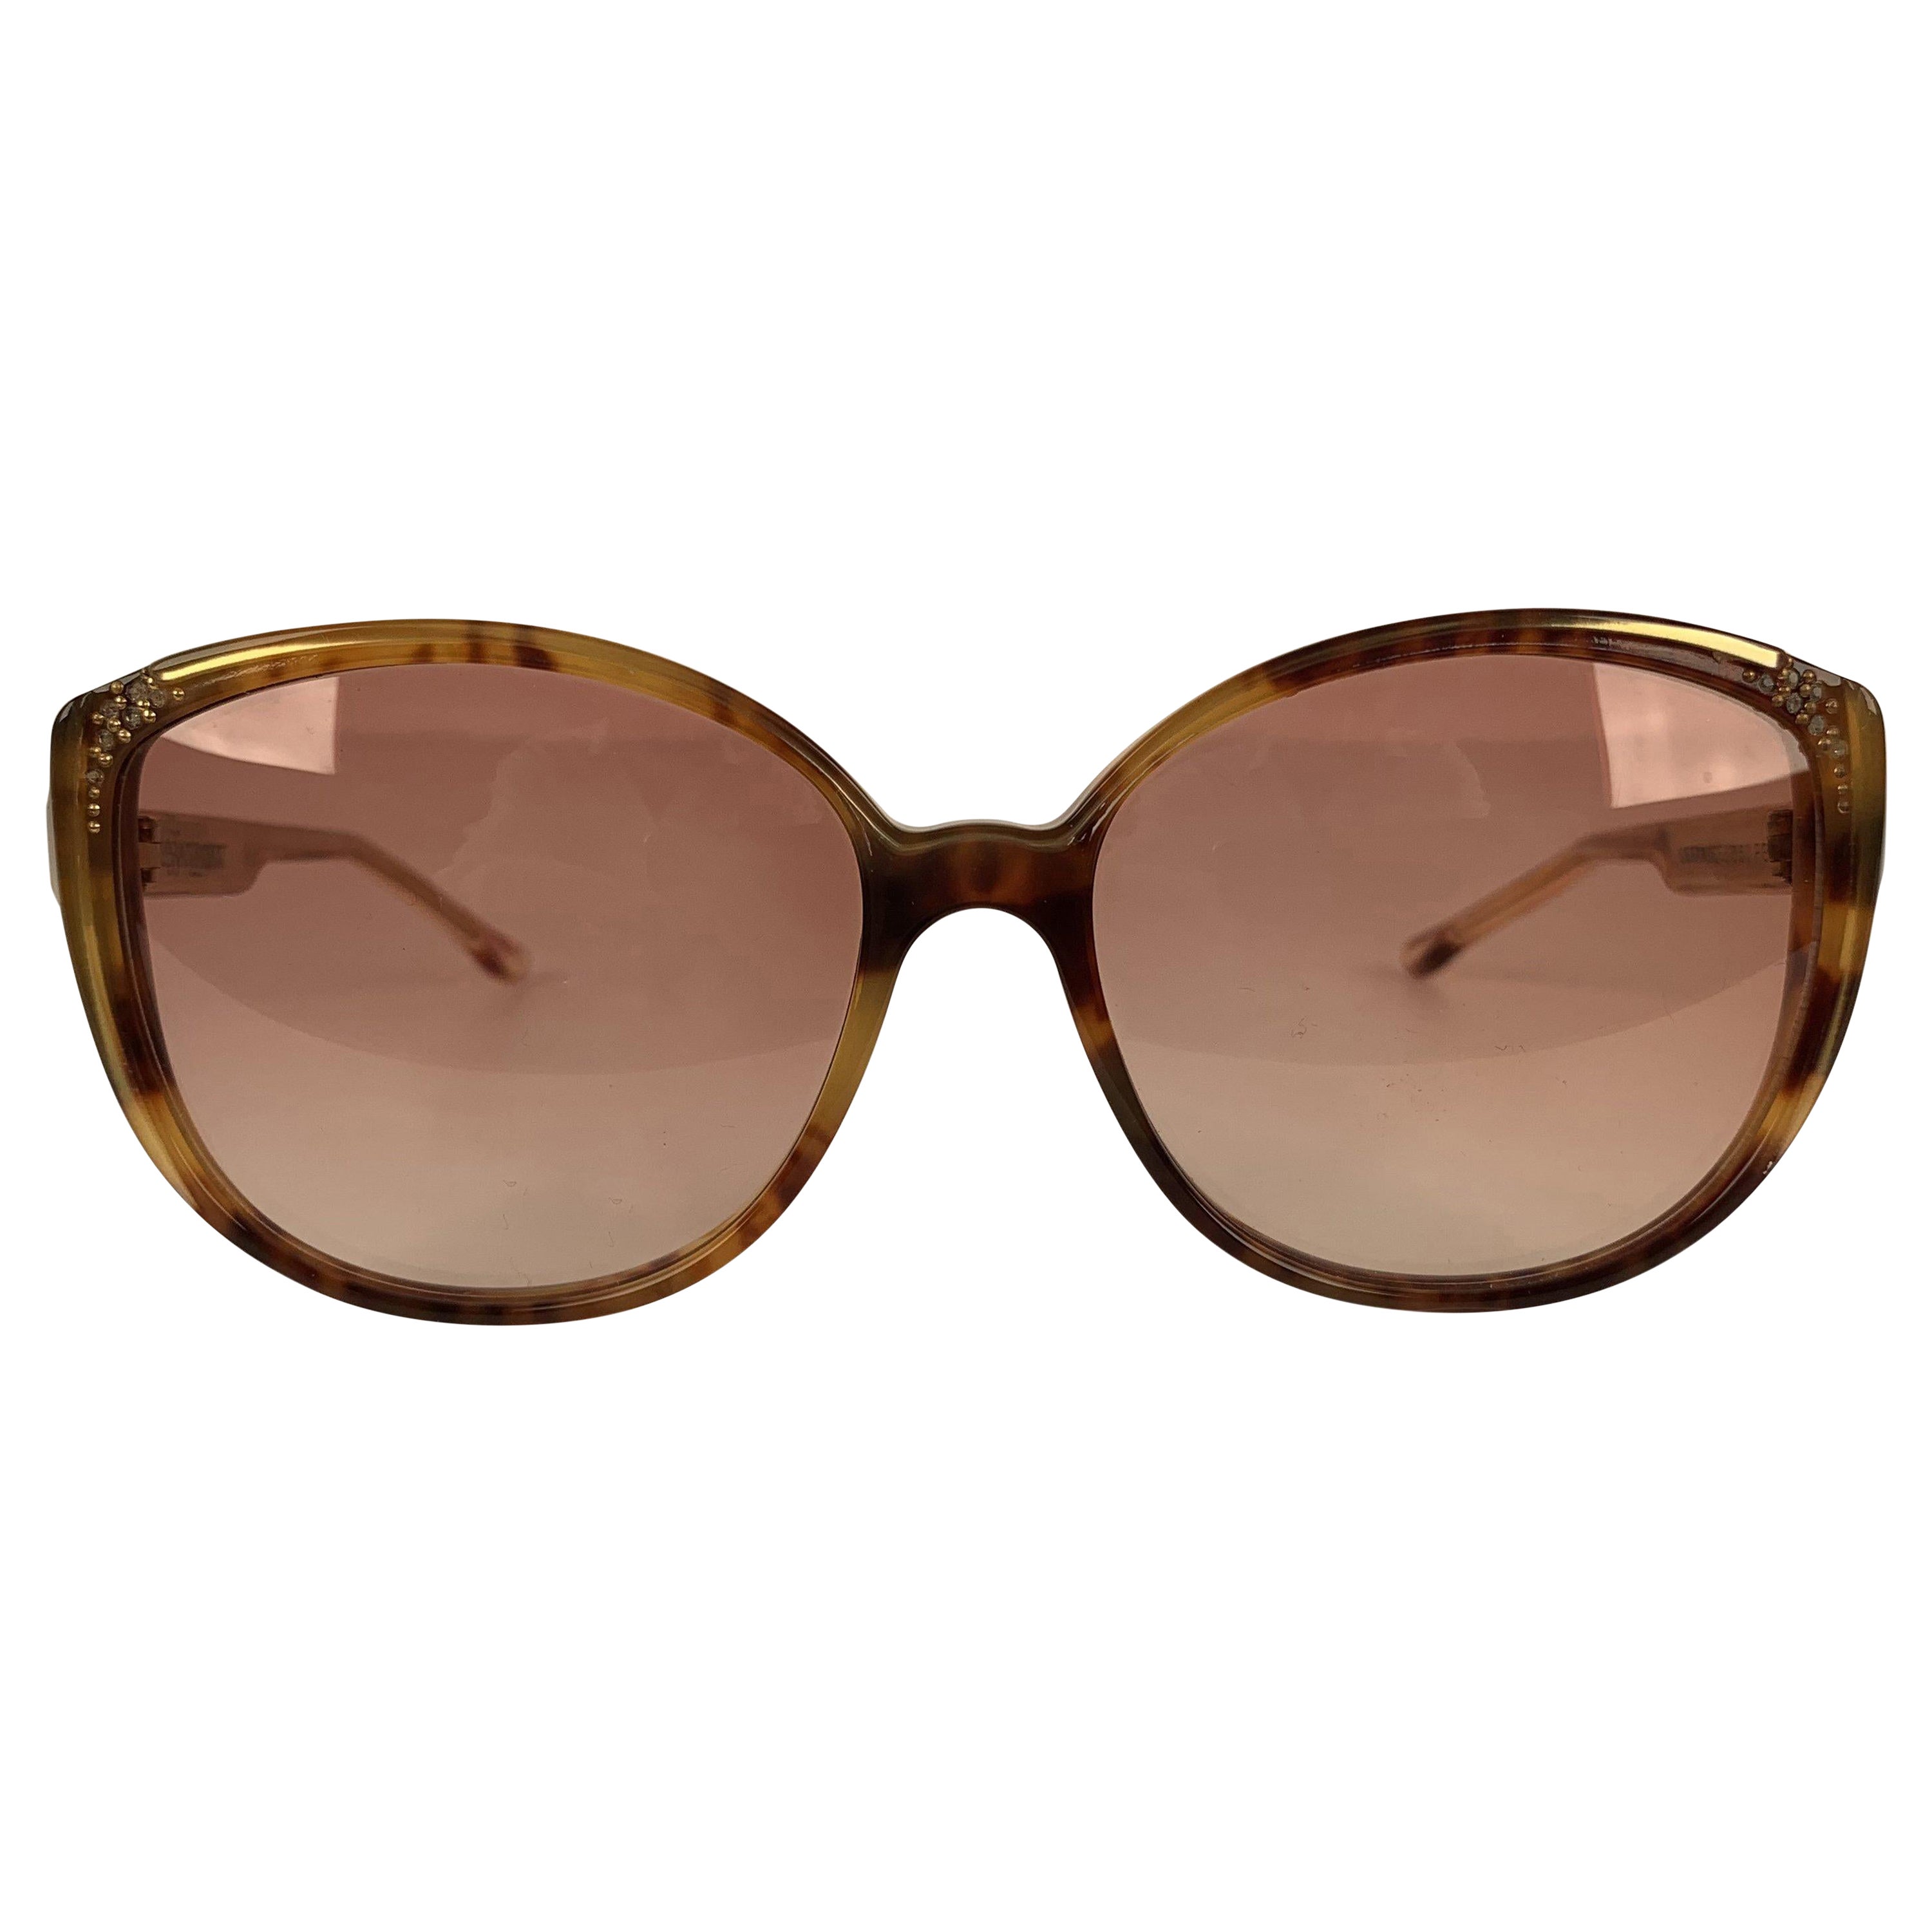 Yves Saint Laurent Vintage Butterfly Mint Sunglasses 8150 58-14 140mm